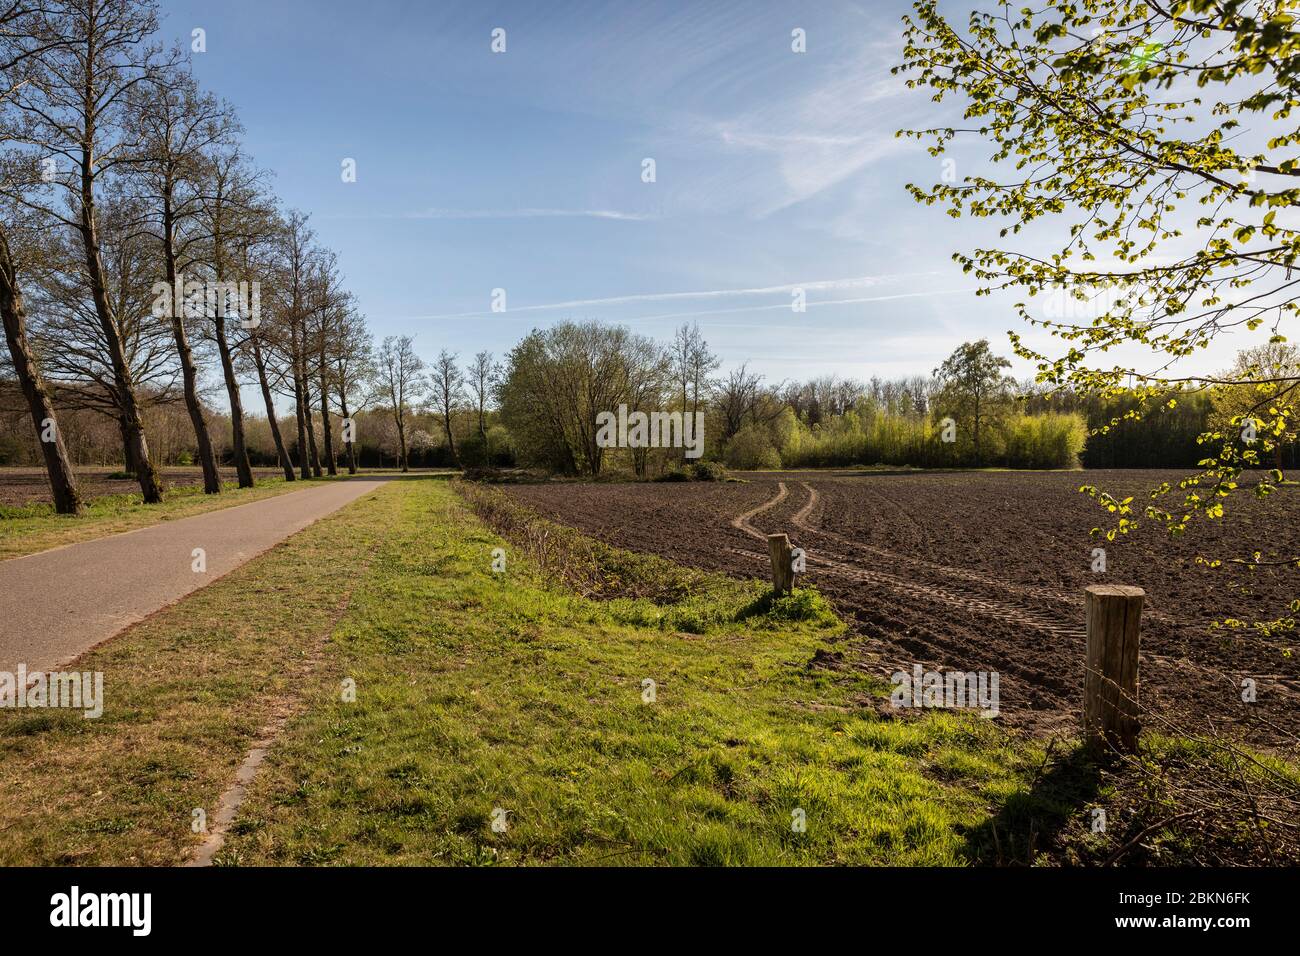 Blick auf die ländliche Gegend in der Nähe des Philips de Jongh Parks und Strijp R in Eindhoven City an einem sonnigen Sommertag. Niederländische Natur mit einer Straße, Bäumen und g Stockfoto